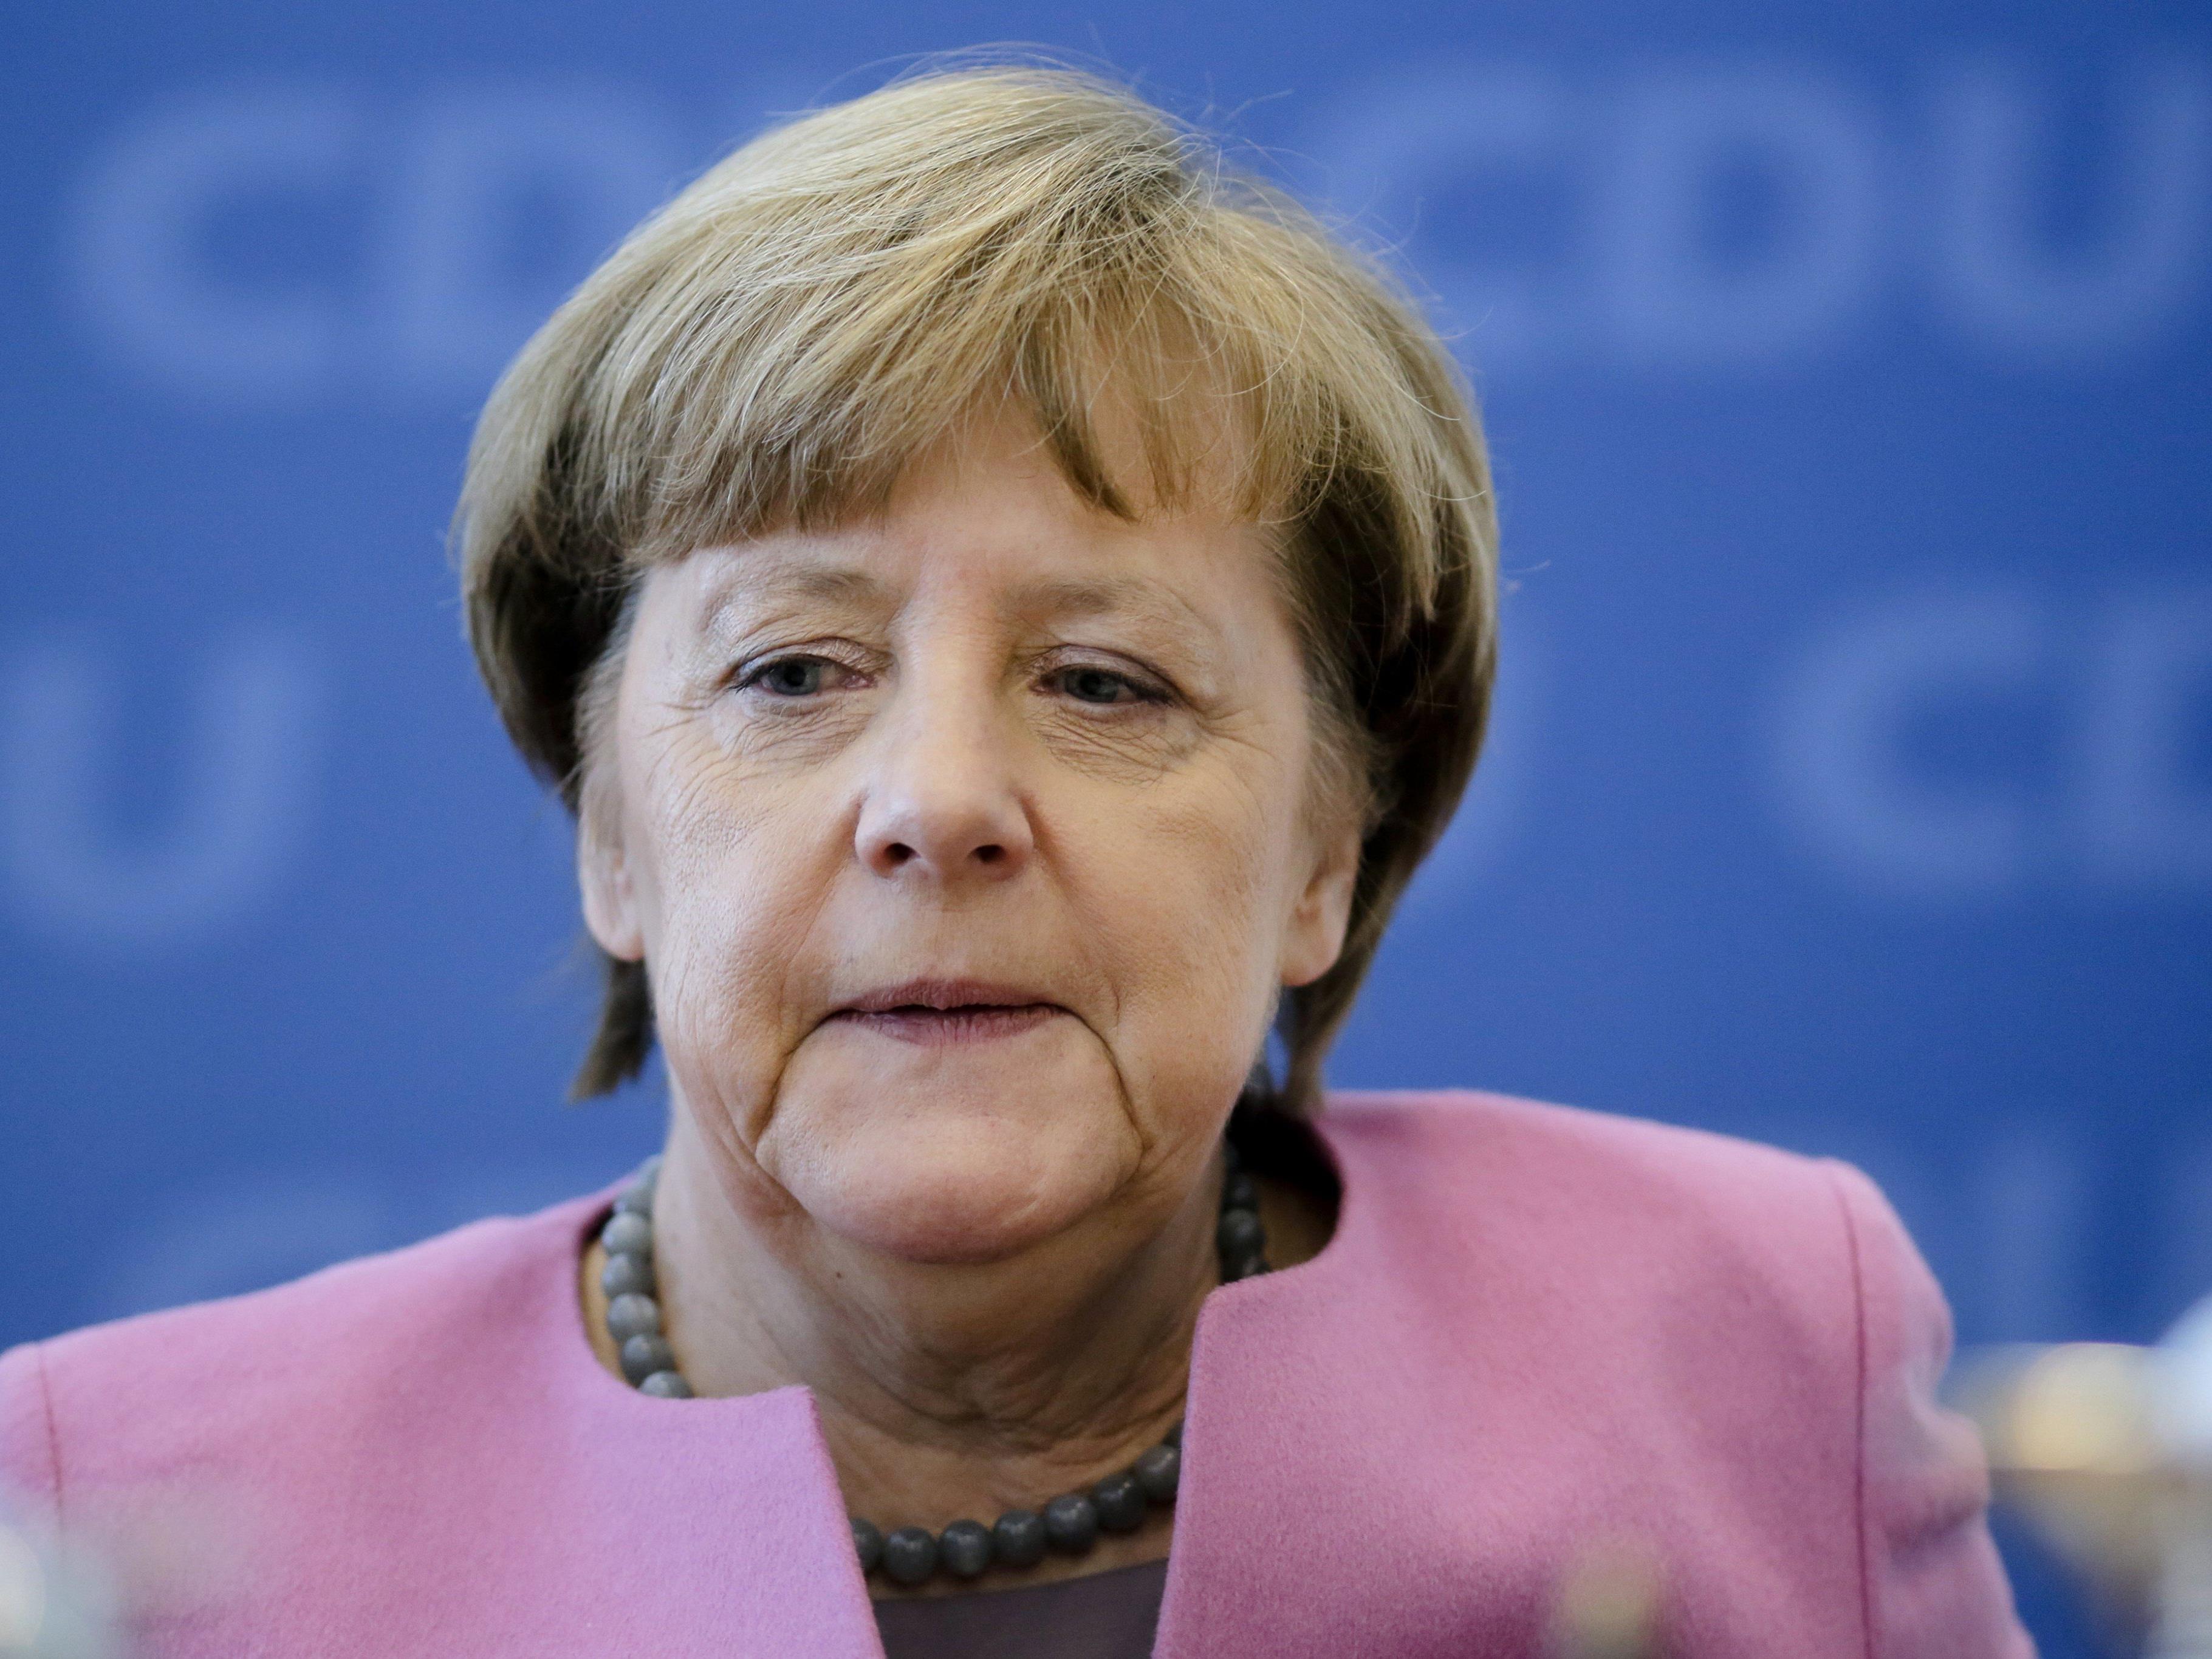 Angela Merkel ist in der Flüchtlingsfrage zunehmend isoliert - inner- wie außerhalb Deutschlands.